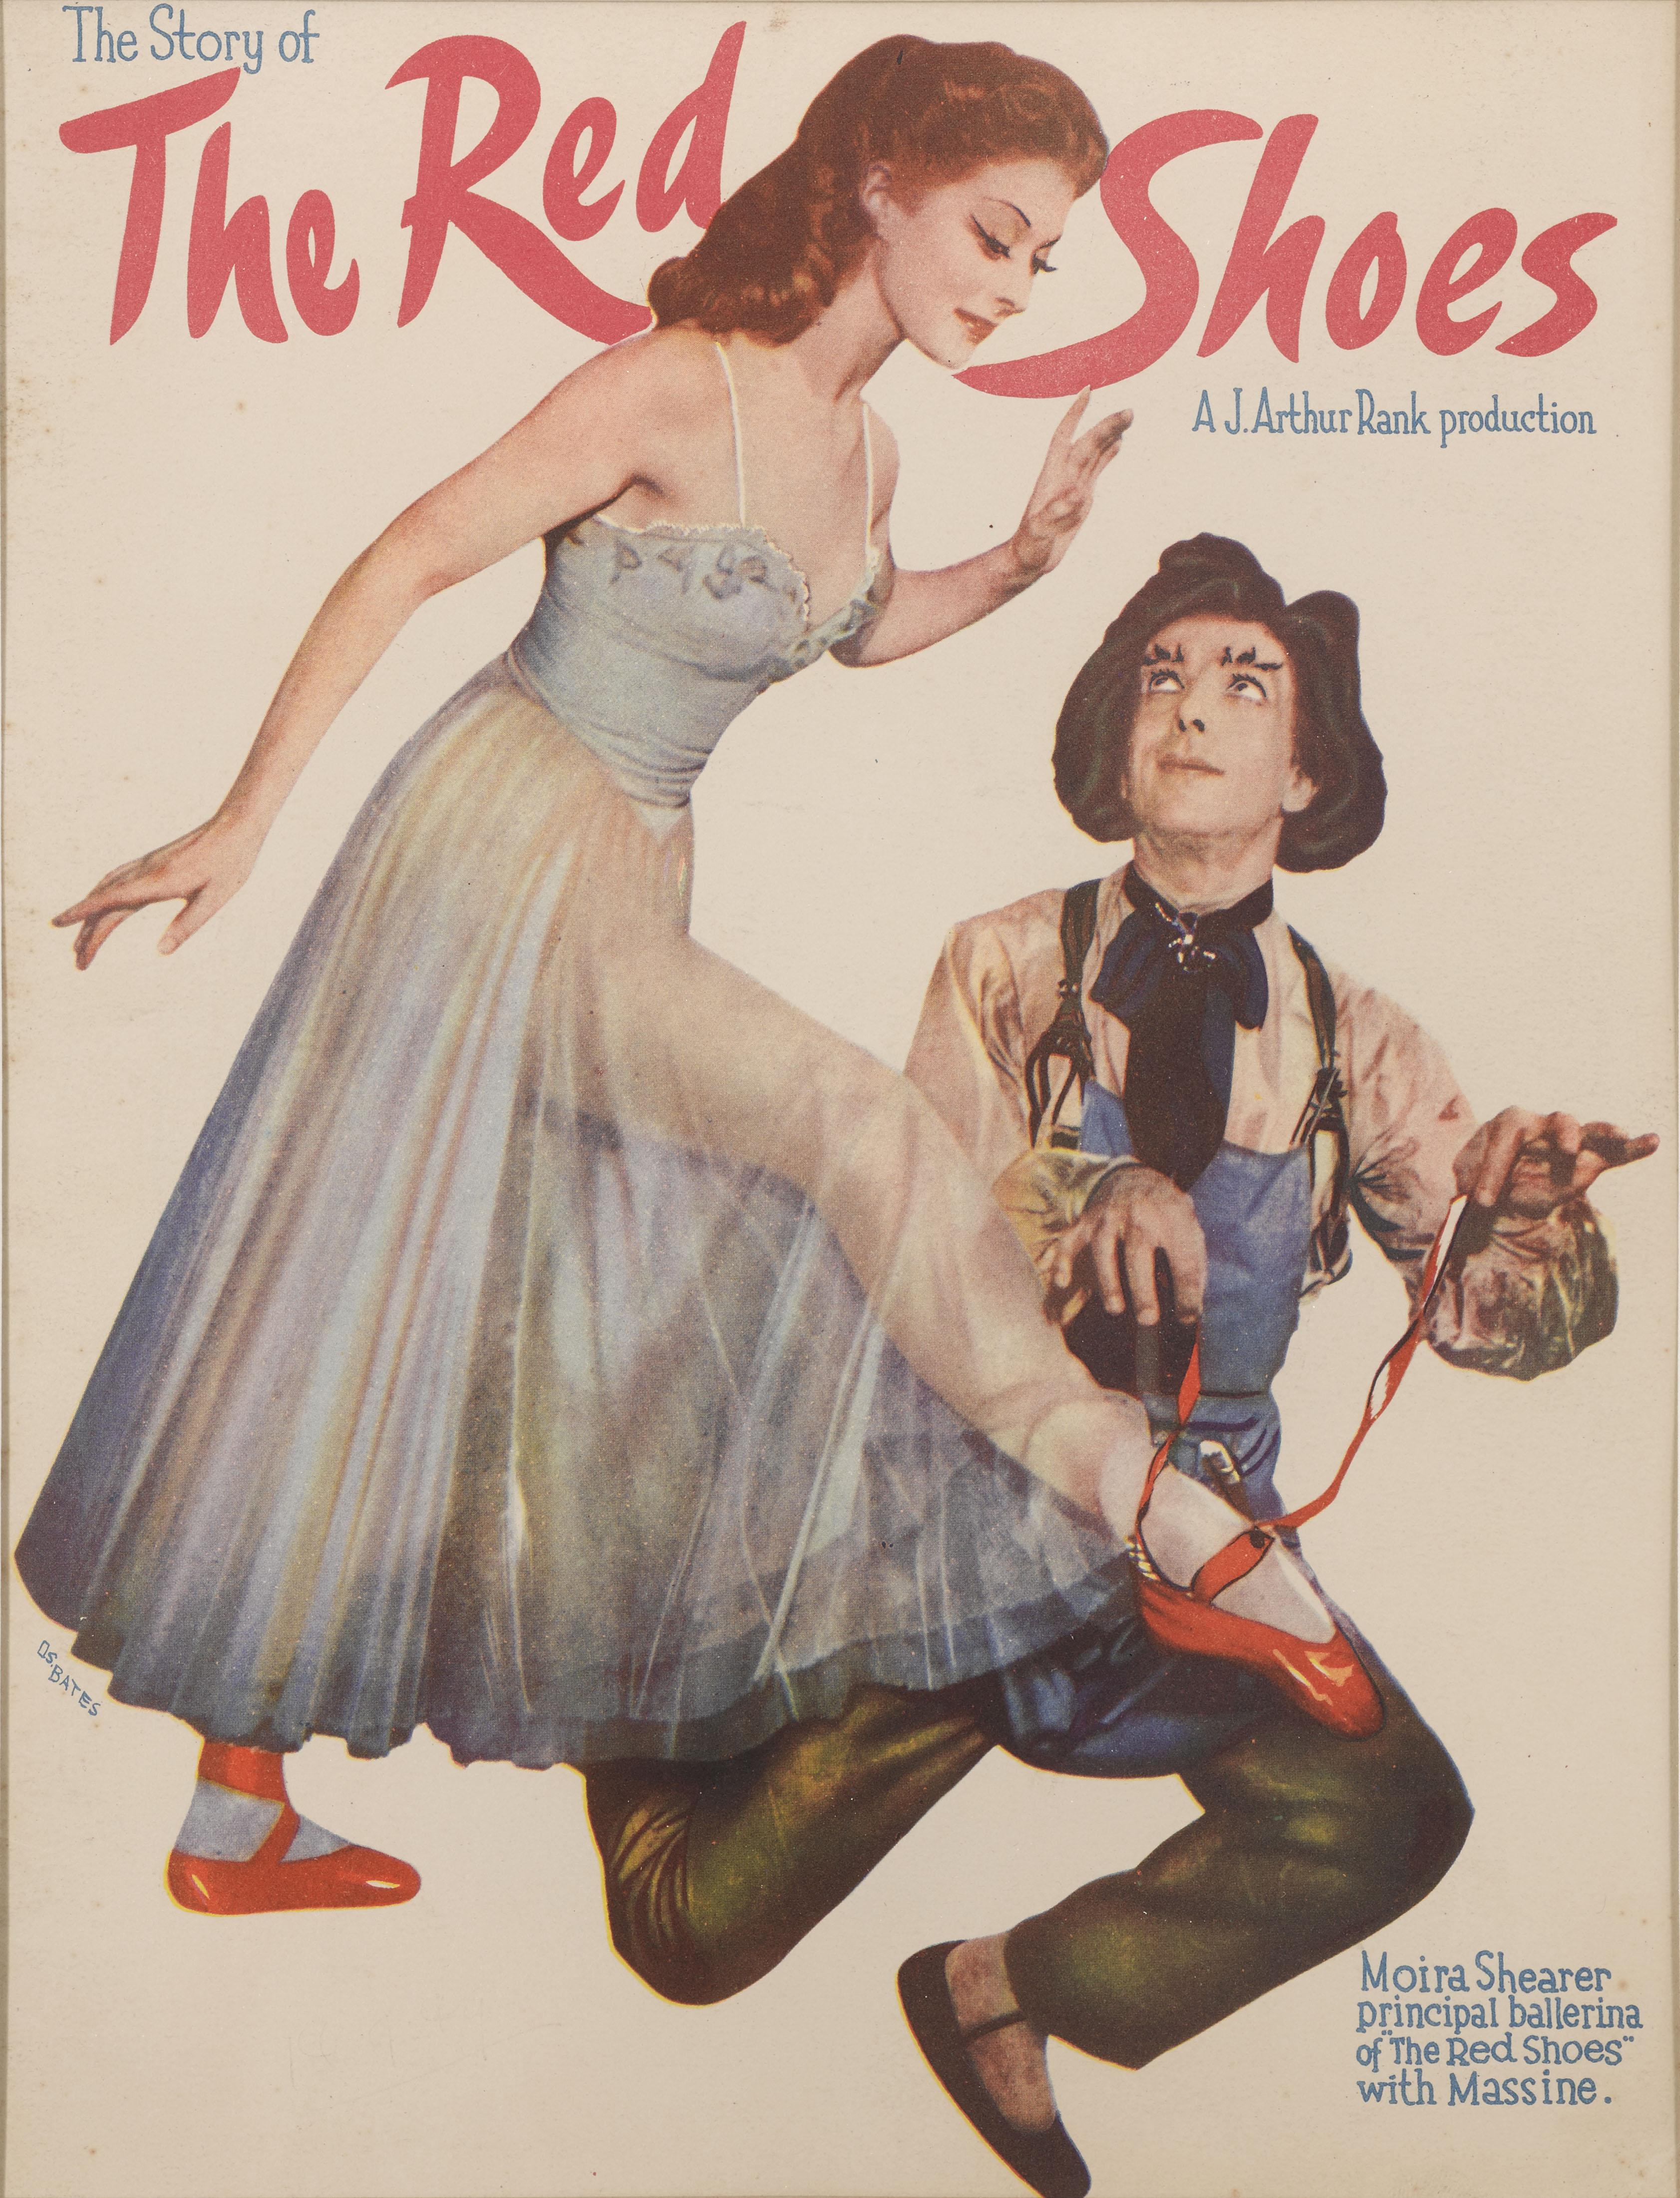 ein seltenes originales australisches Souvenir-Programm-Cover für The Red Shoes 1948. Dieser Film wurde von dem berühmten Regieduo Michael Powell und Emeric Pressburger gedreht und gilt als einer der  die besten Filme, die sie gemacht haben.
Dieses